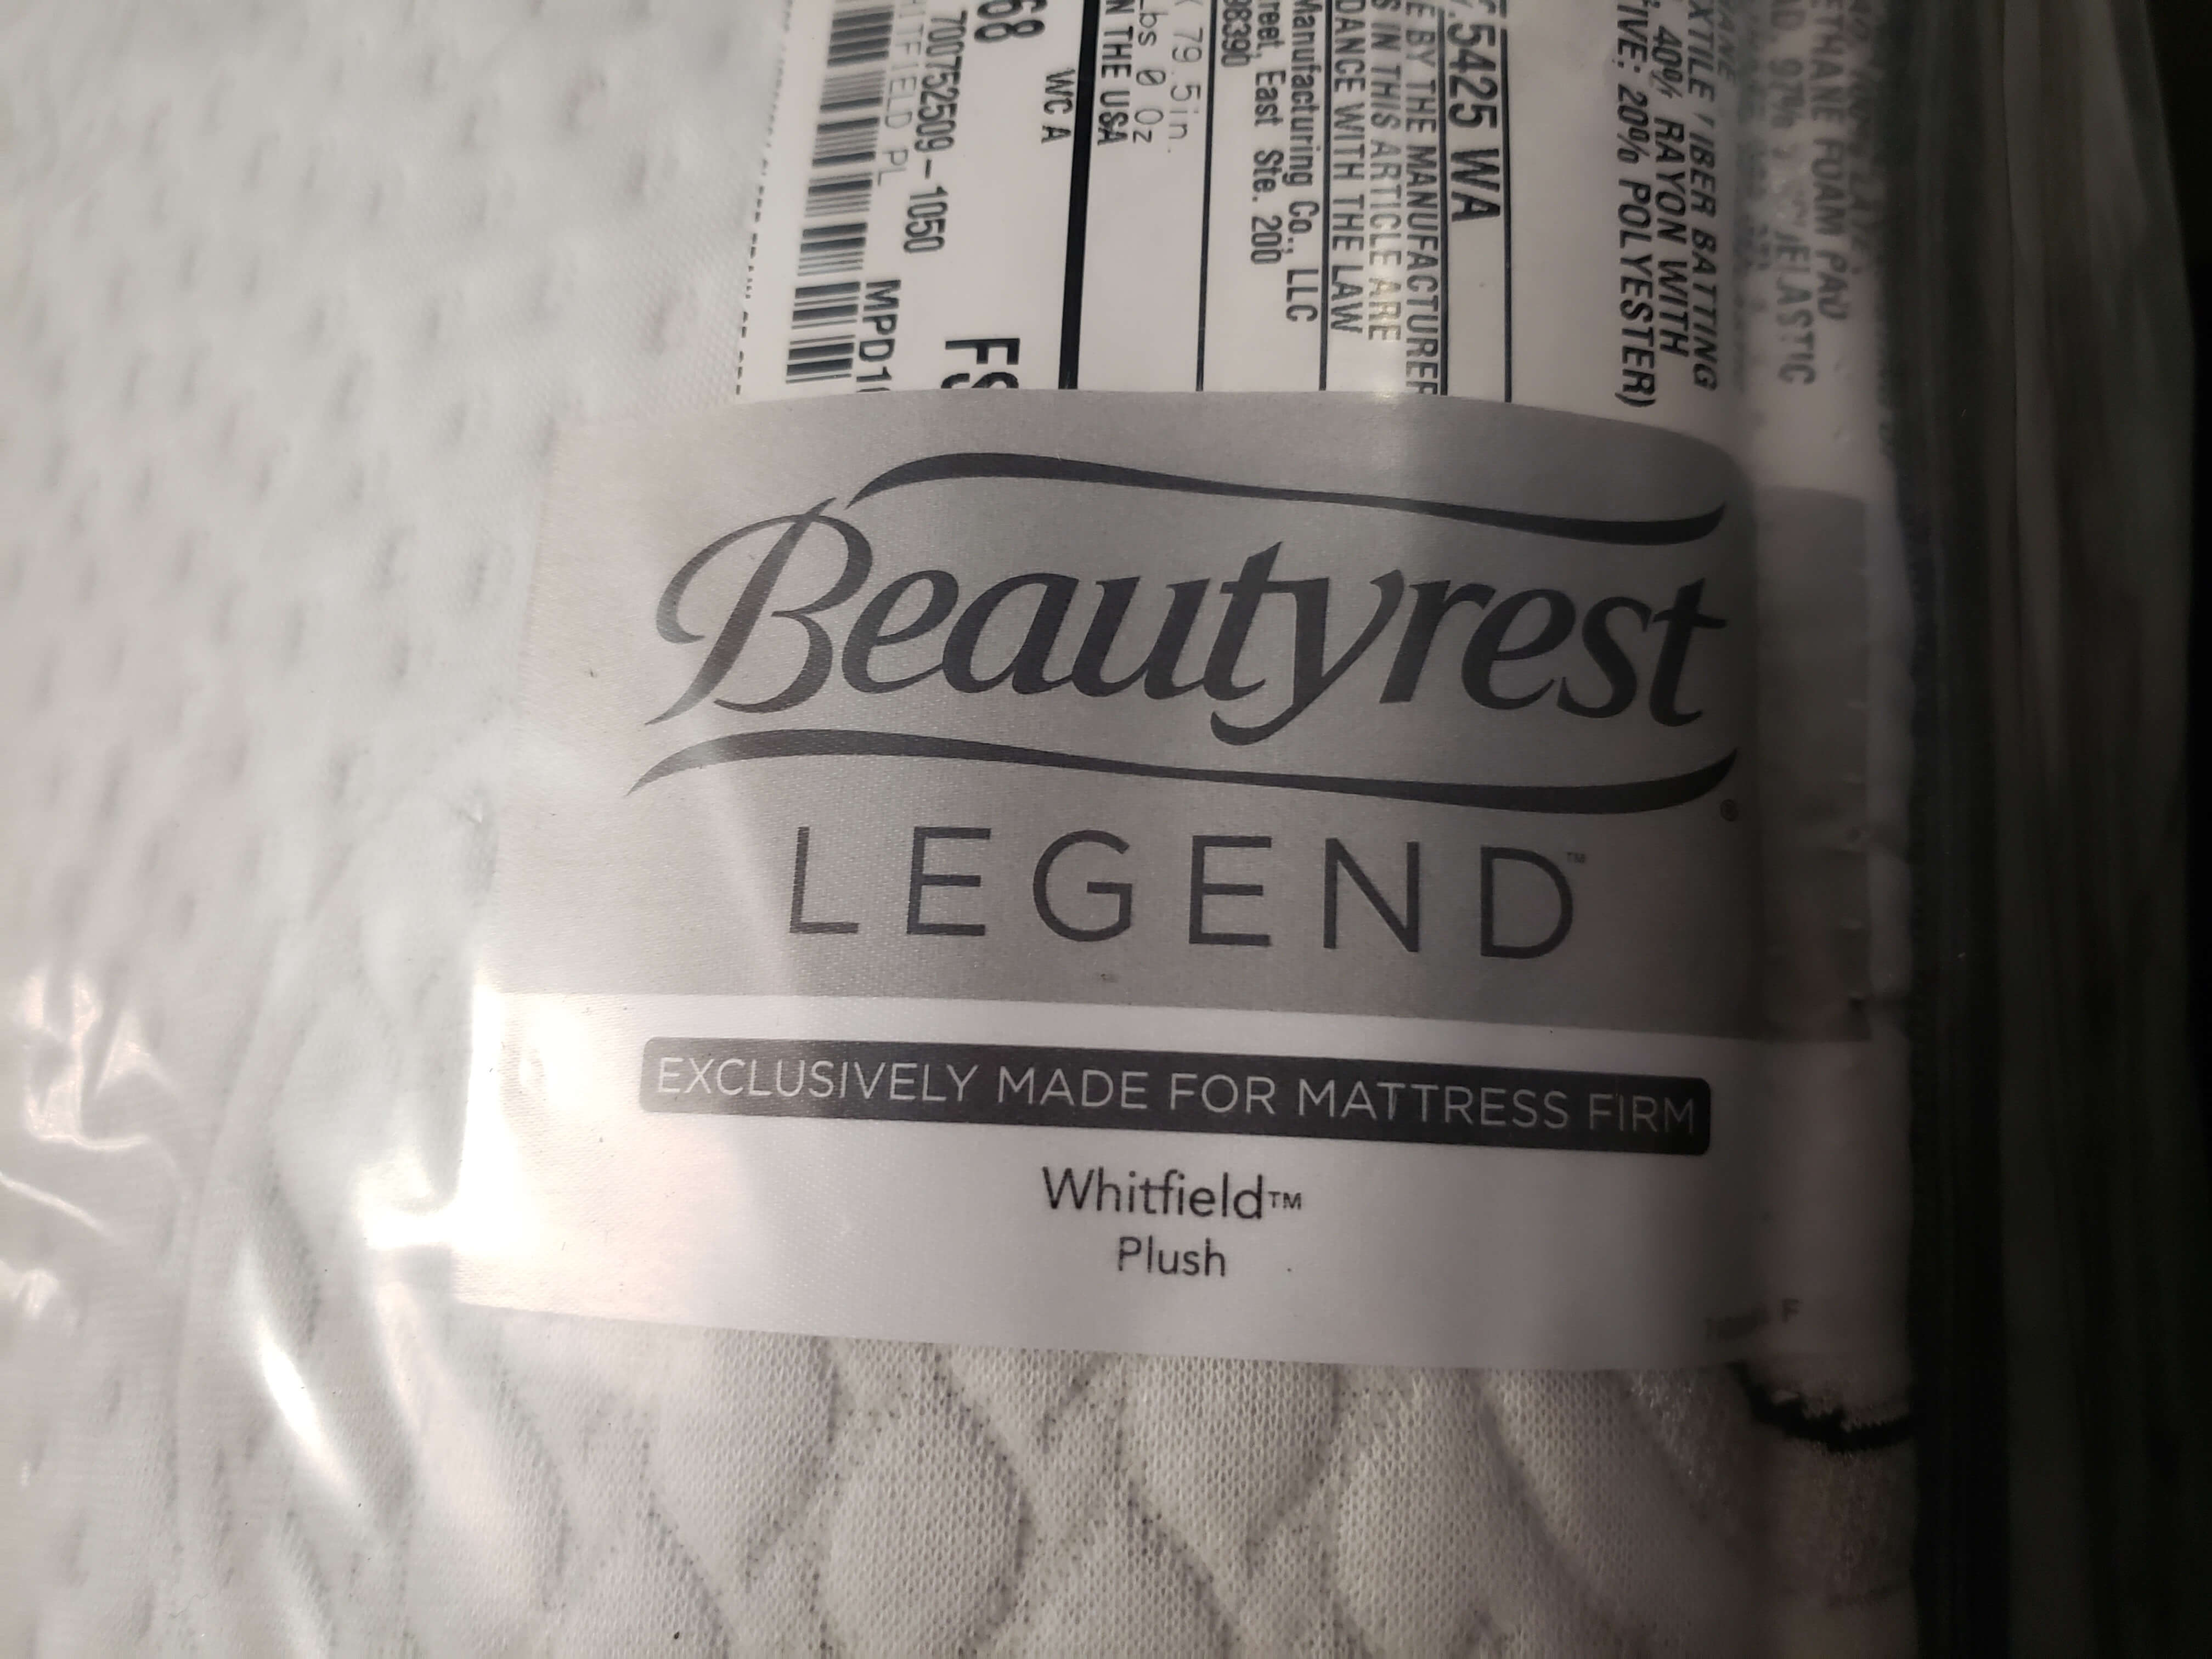 beautyrest legend mattress queen